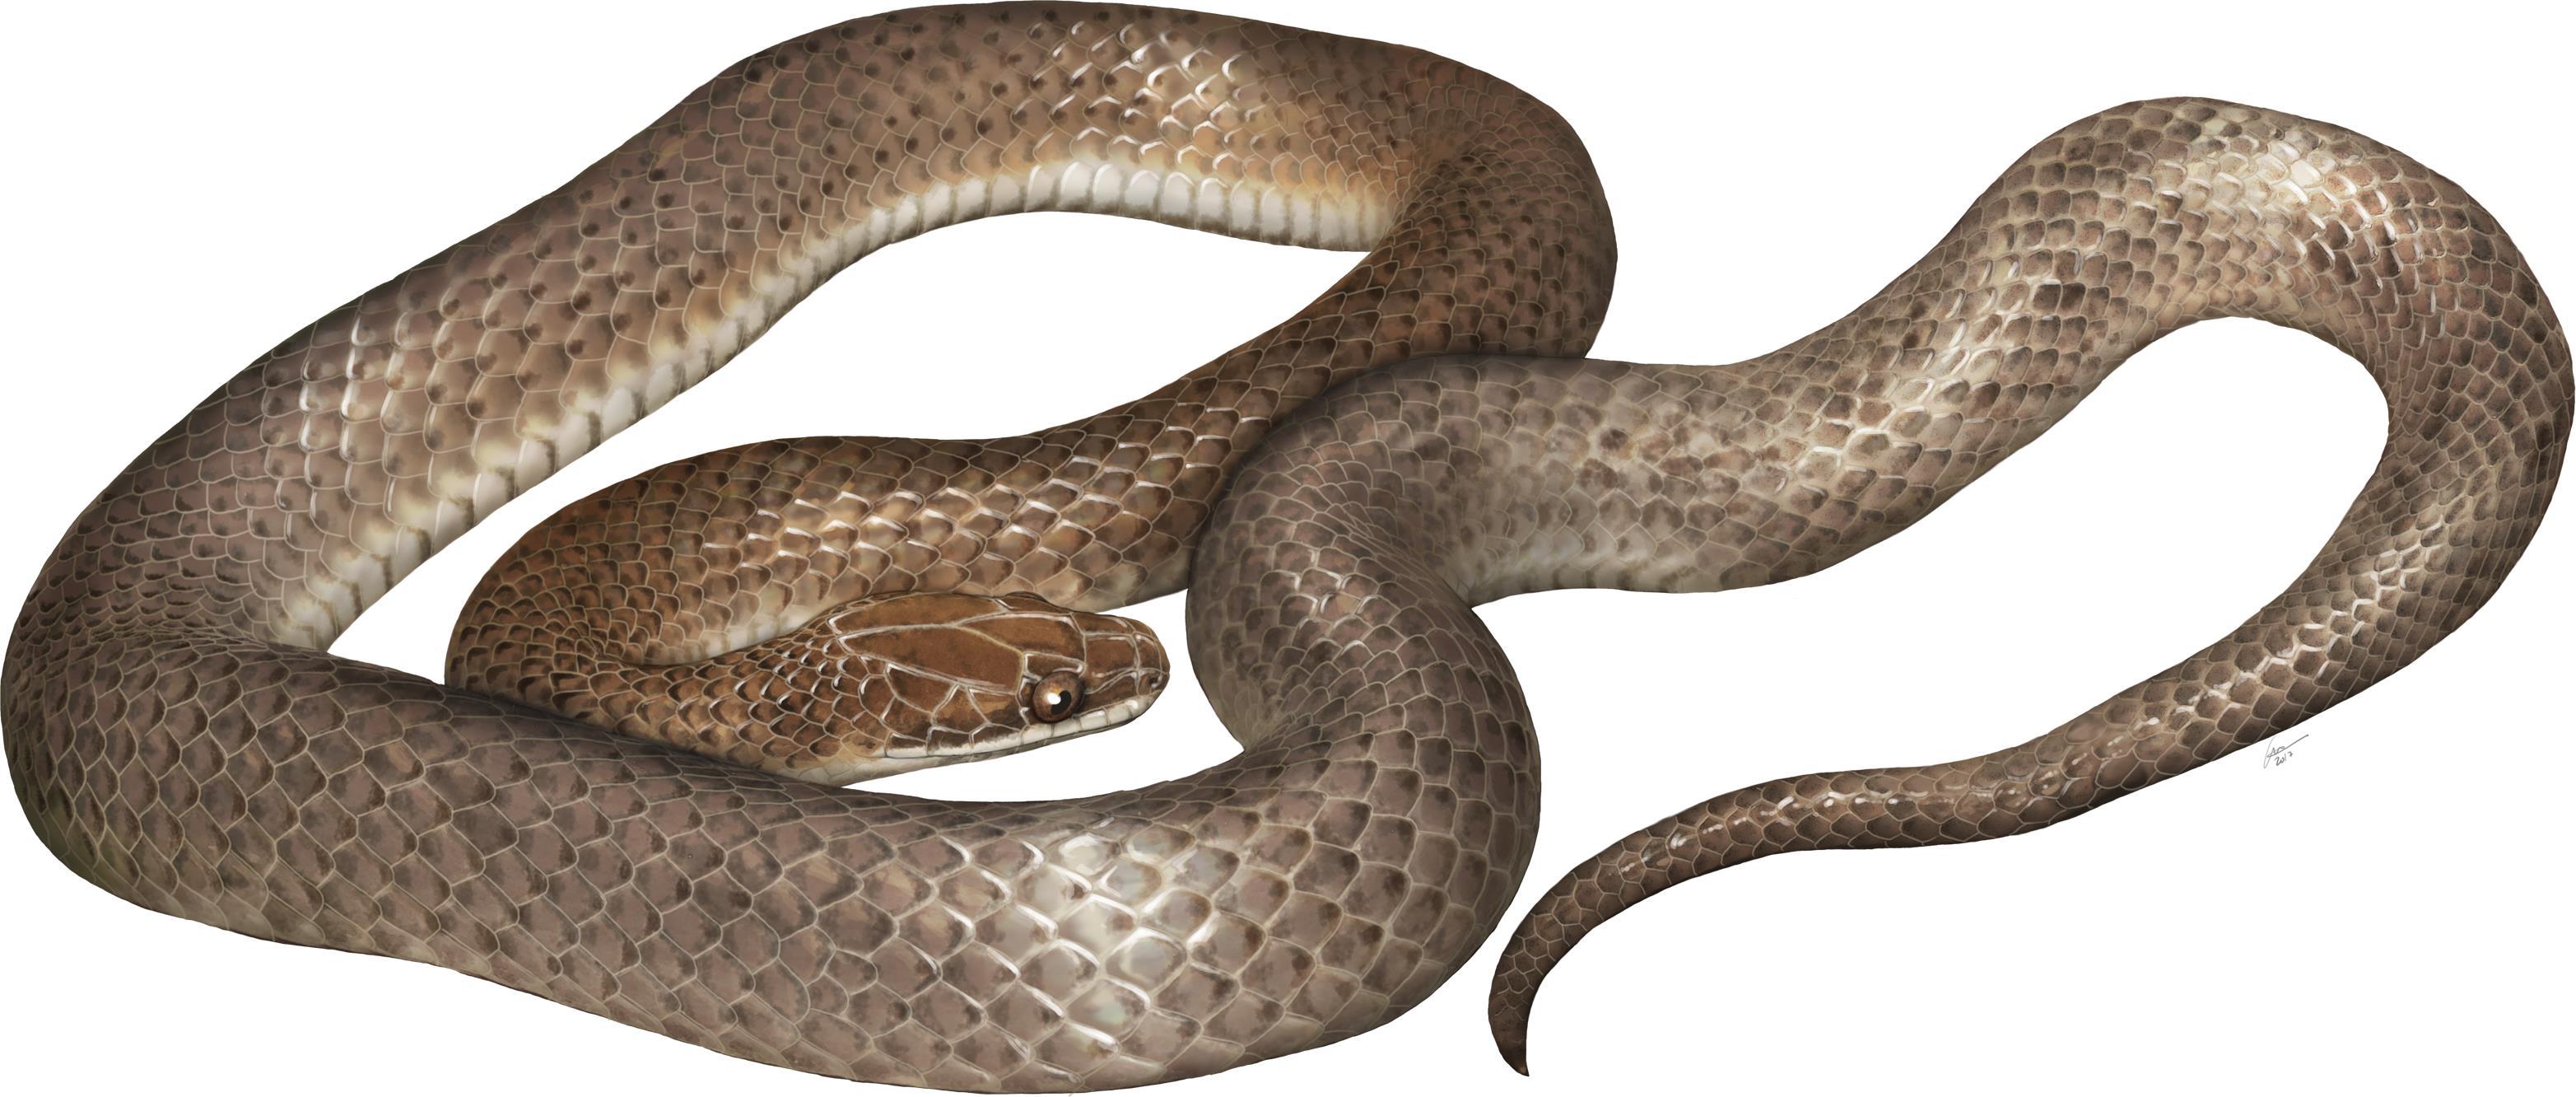 Учёные обнаружили змею нового вида в другой змее